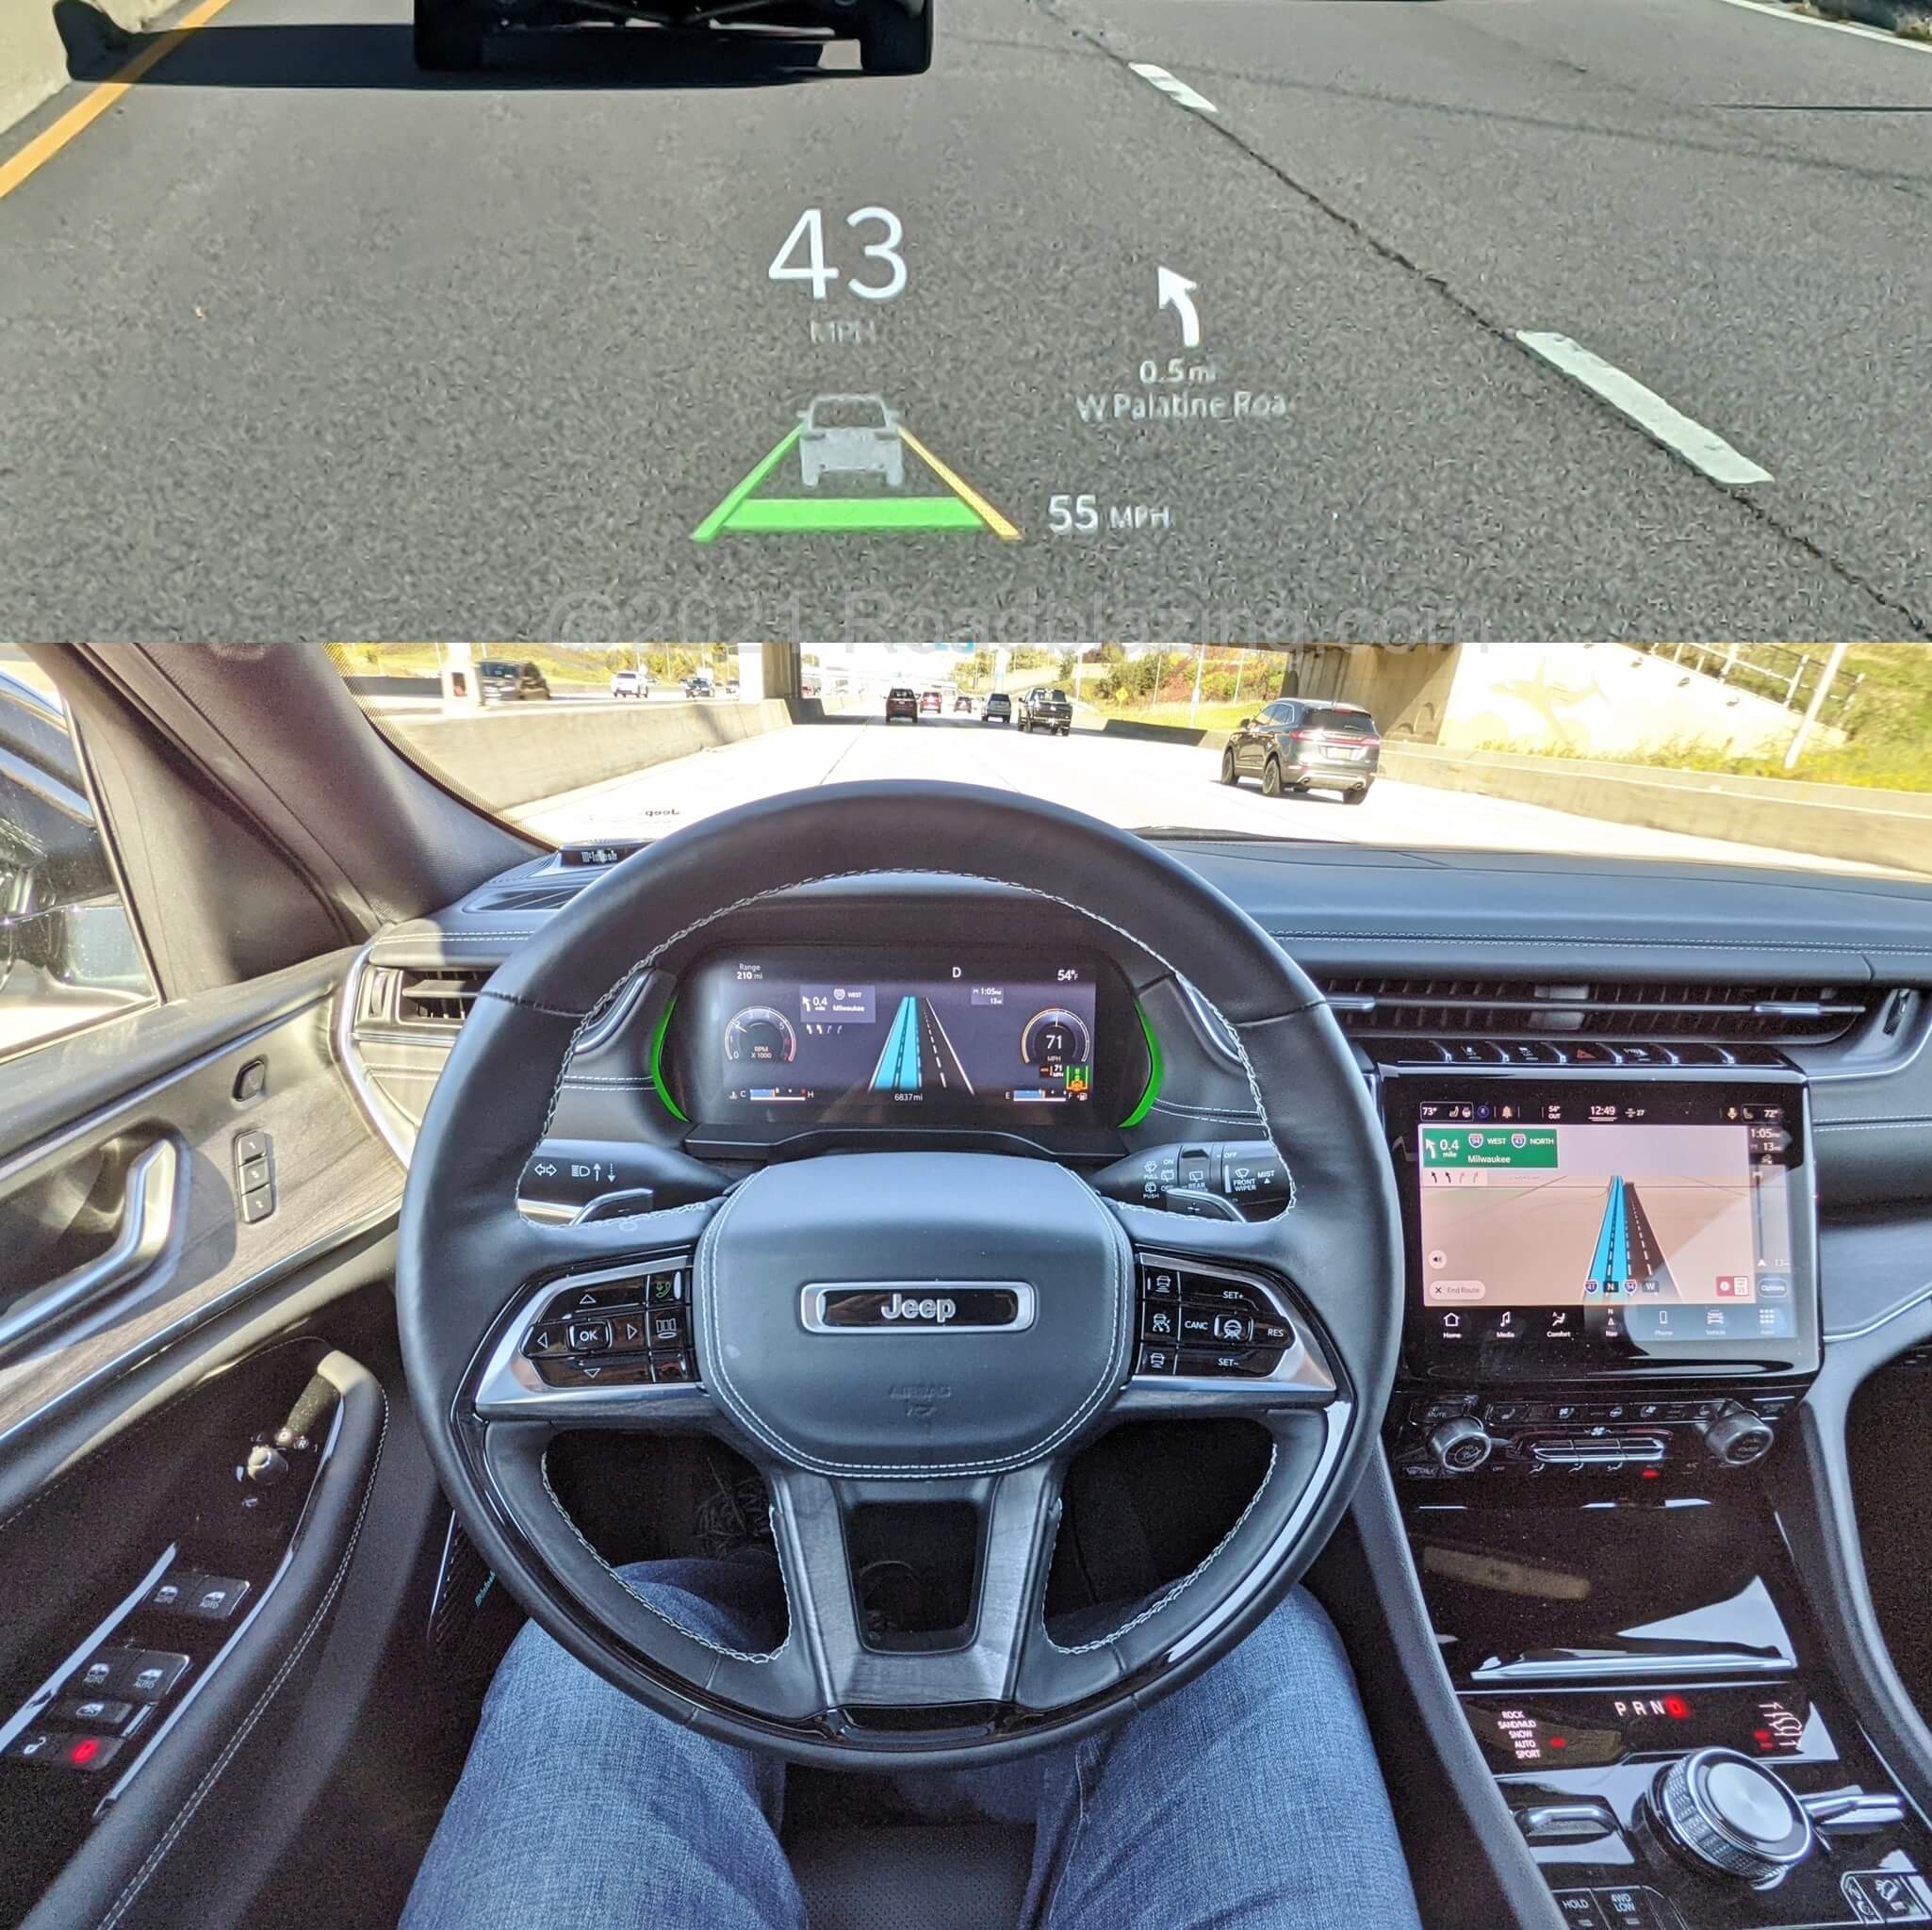 2021 Jeep Grand Cherokee L Overland 5.7L 4x4: TomTom designed native navigation displays on 10.1" Uconnect 5.0 infotainment, 10.25" digital instrument cluster & HUD